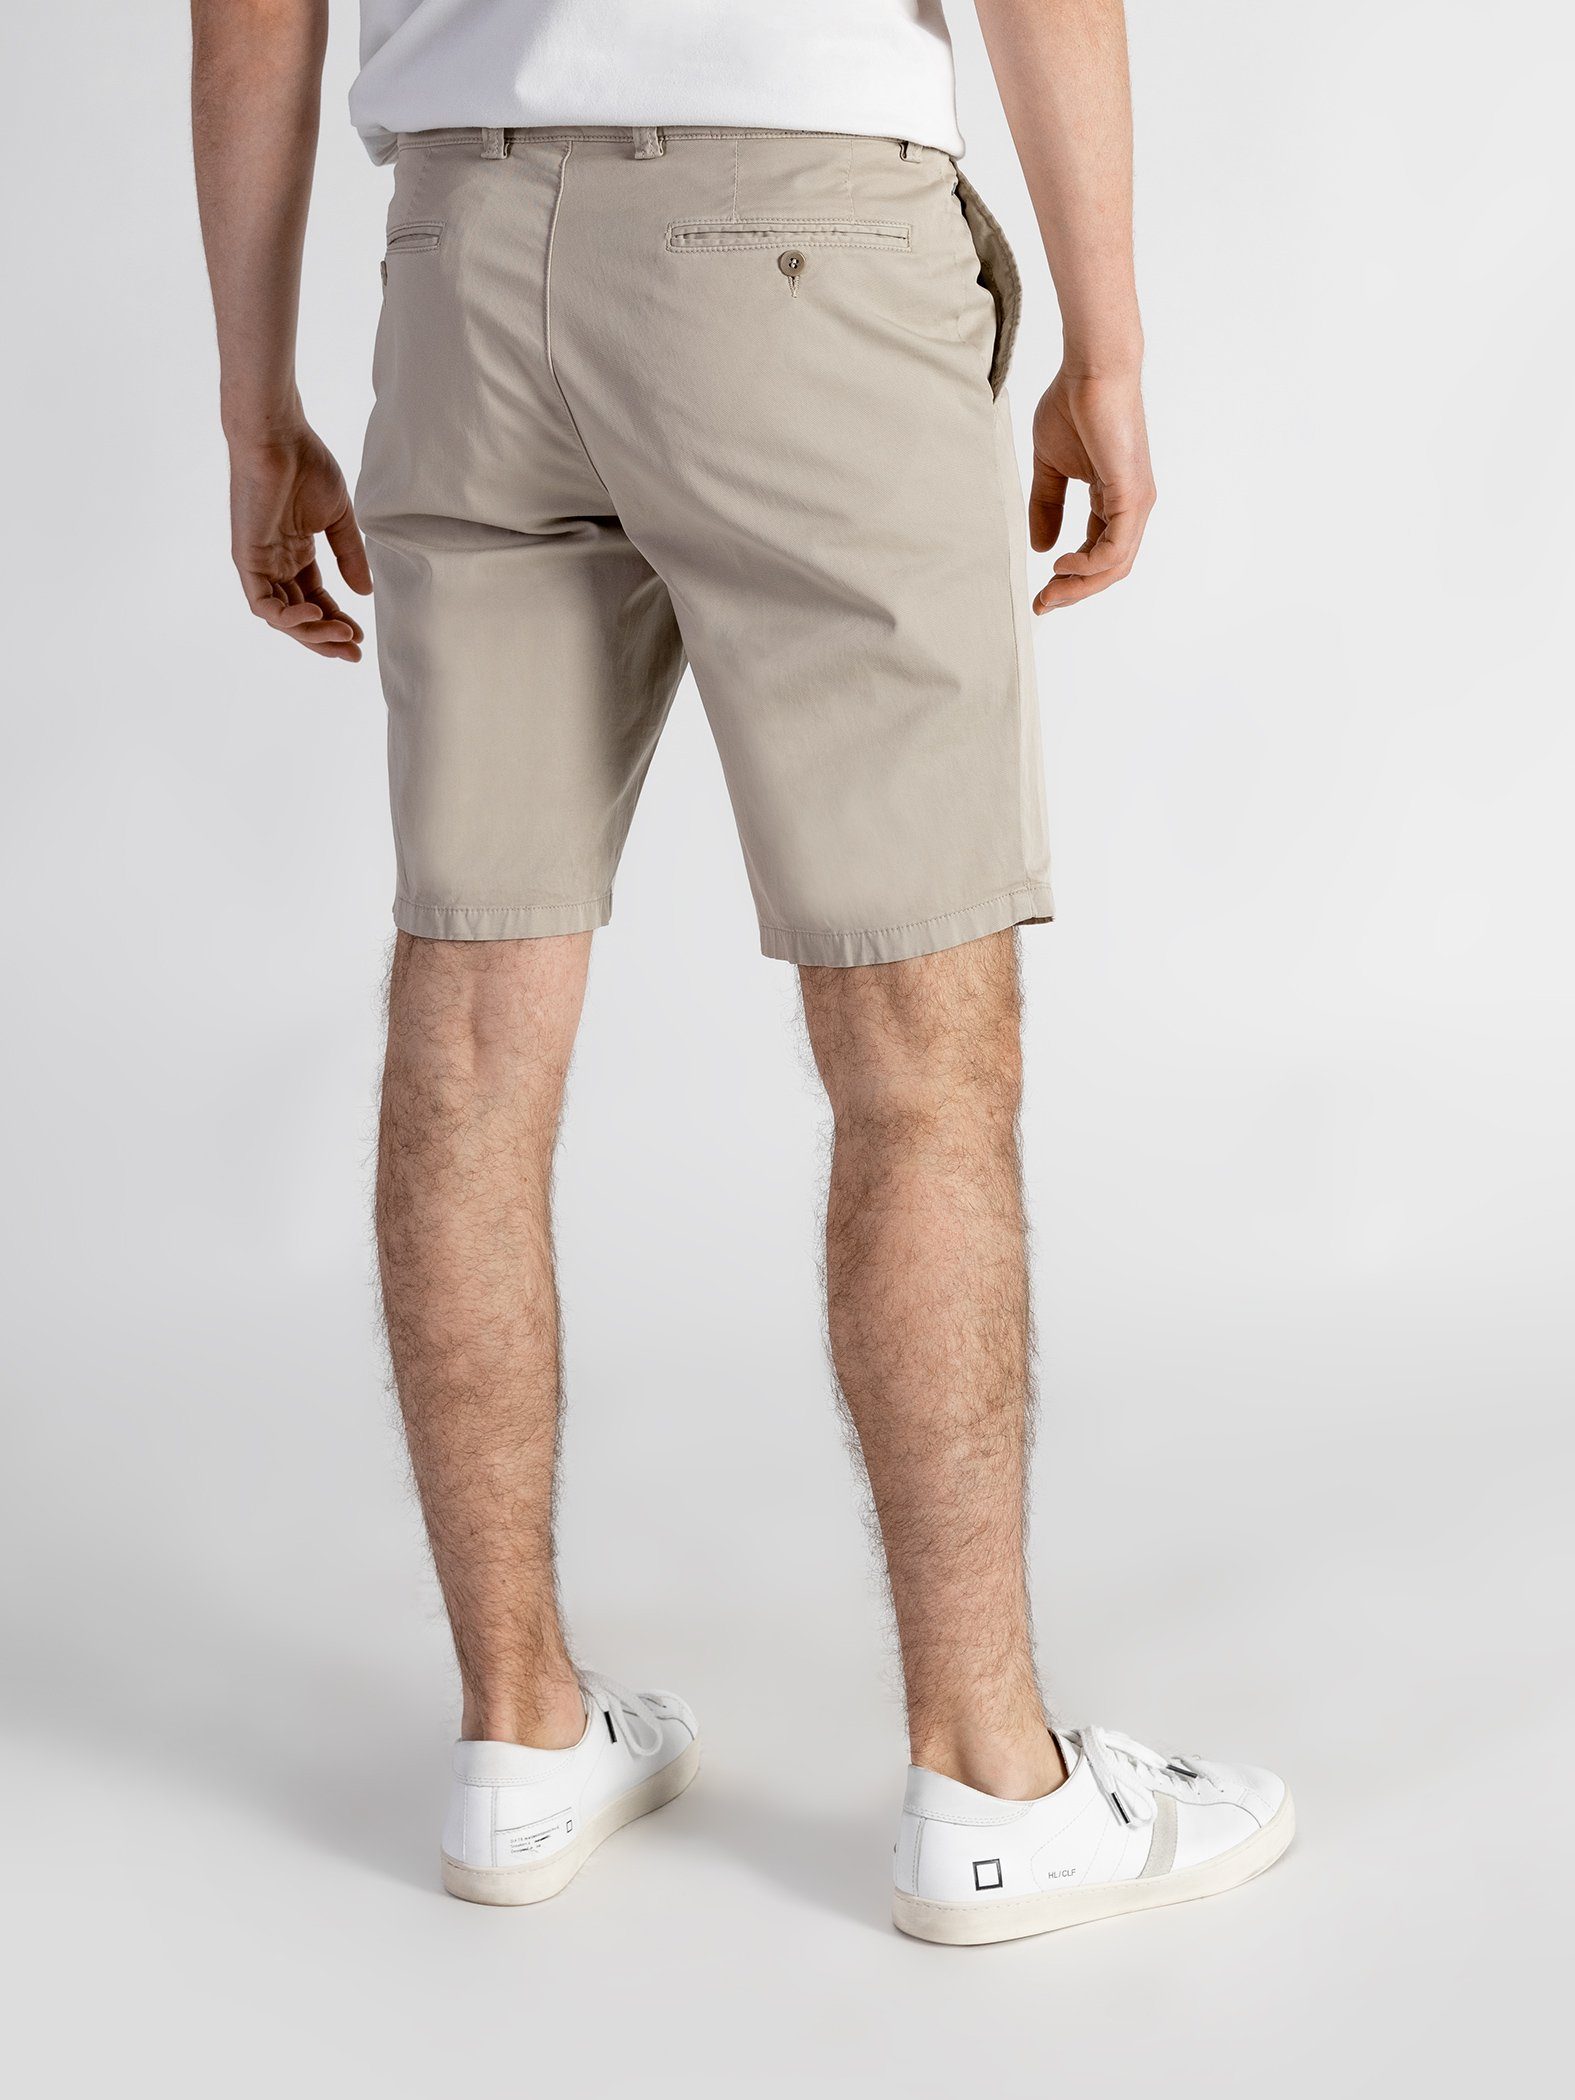 Shorts GOTS-zertifiziert mit Bund, Shorts sandbeige Farbauswahl, elastischem TwoMates